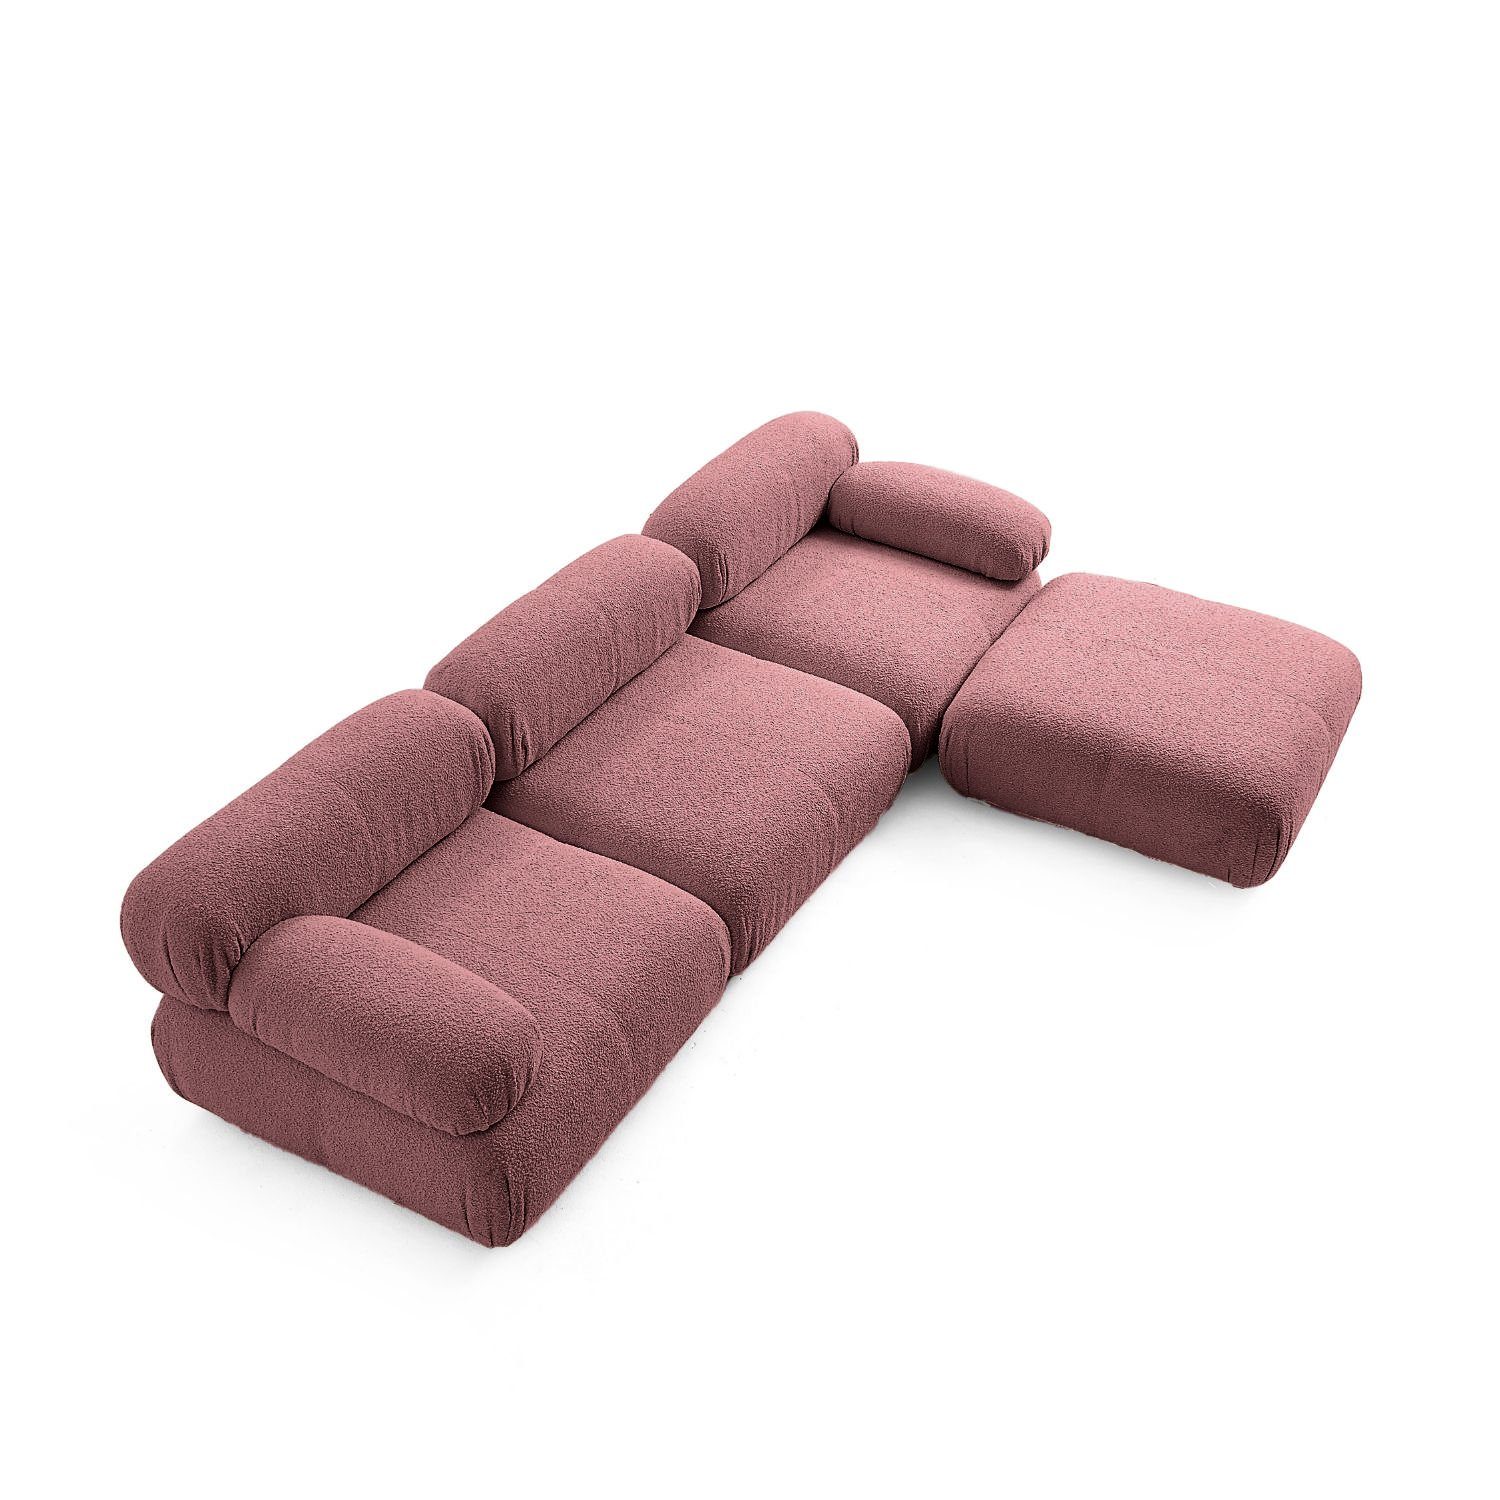 Generation me und Sofa Knuffiges Komfortschaum Preis aus Sitzmöbel Aufbau neueste enthalten! Touch im Samtrot-Lieferung